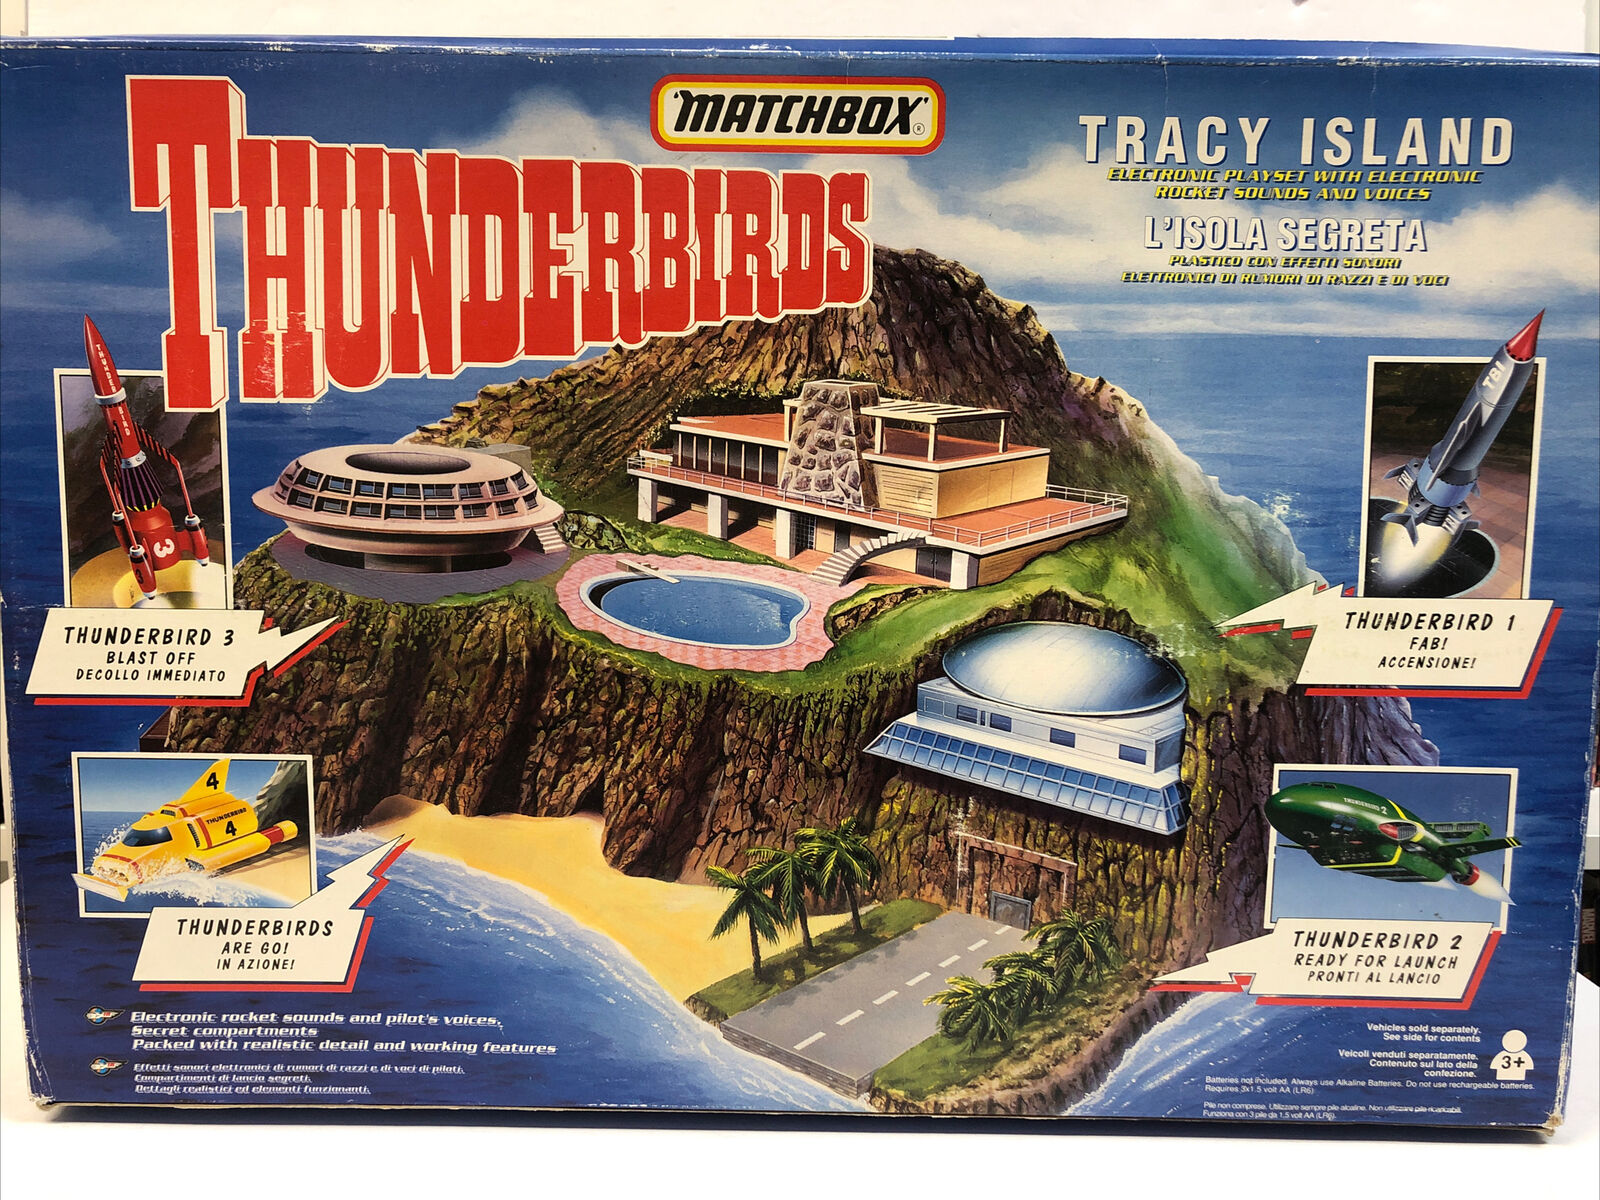 Thunderbirds Tracy Island Electronic Playset | Matchbox